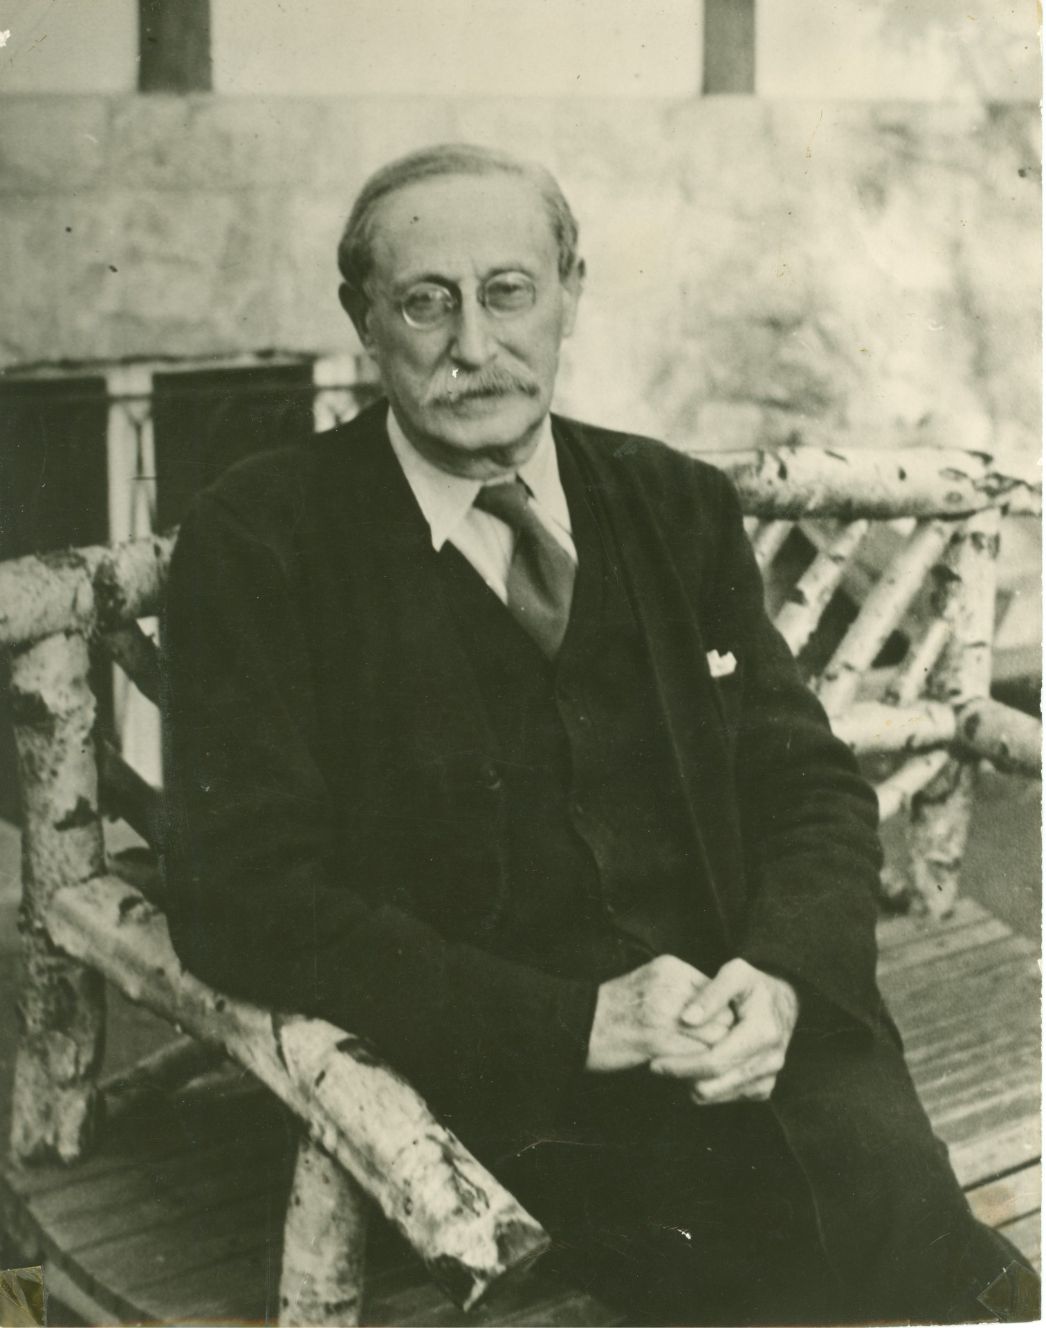 Aufnahme von Léon Blum sitzend